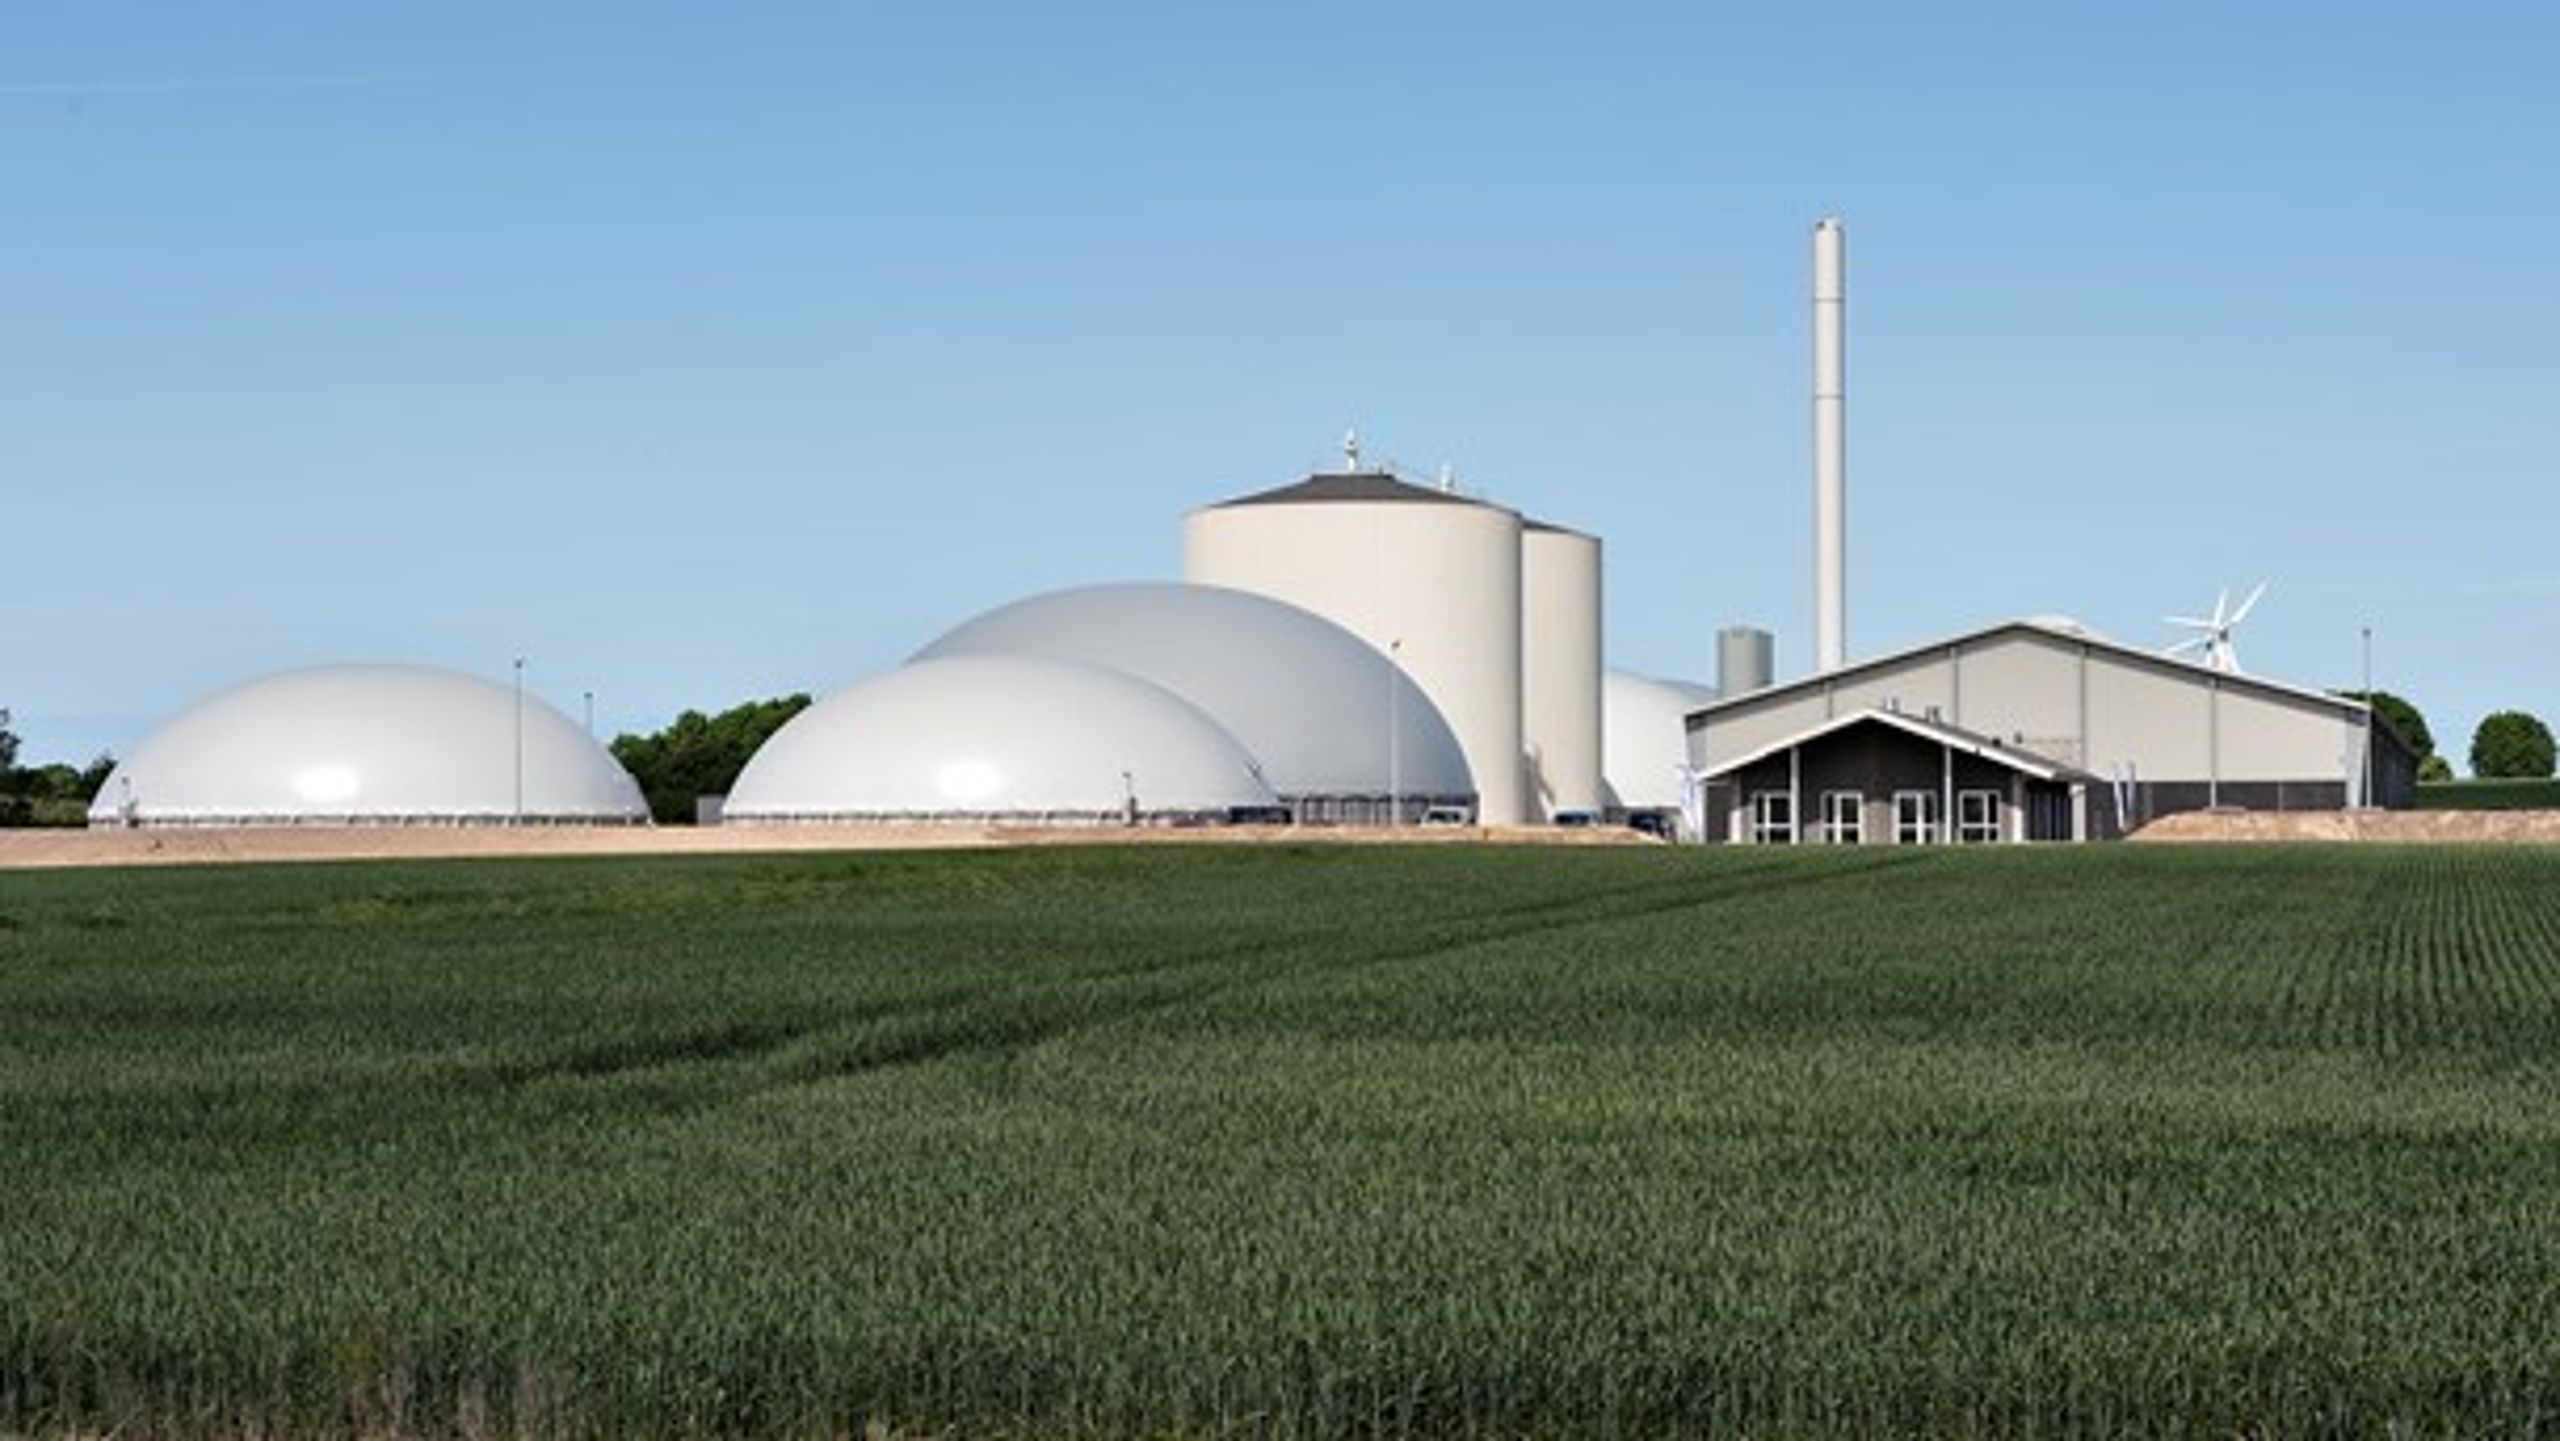 Biogas kan være med til at fortrænge naturgassen og vise vejen for en mere grøn og bæredygtig gasforsyning, skriver Holger Schou Rasmussen og Leo Larsen. (Foto: Ritzau/Scanpix/Henning Bagger)